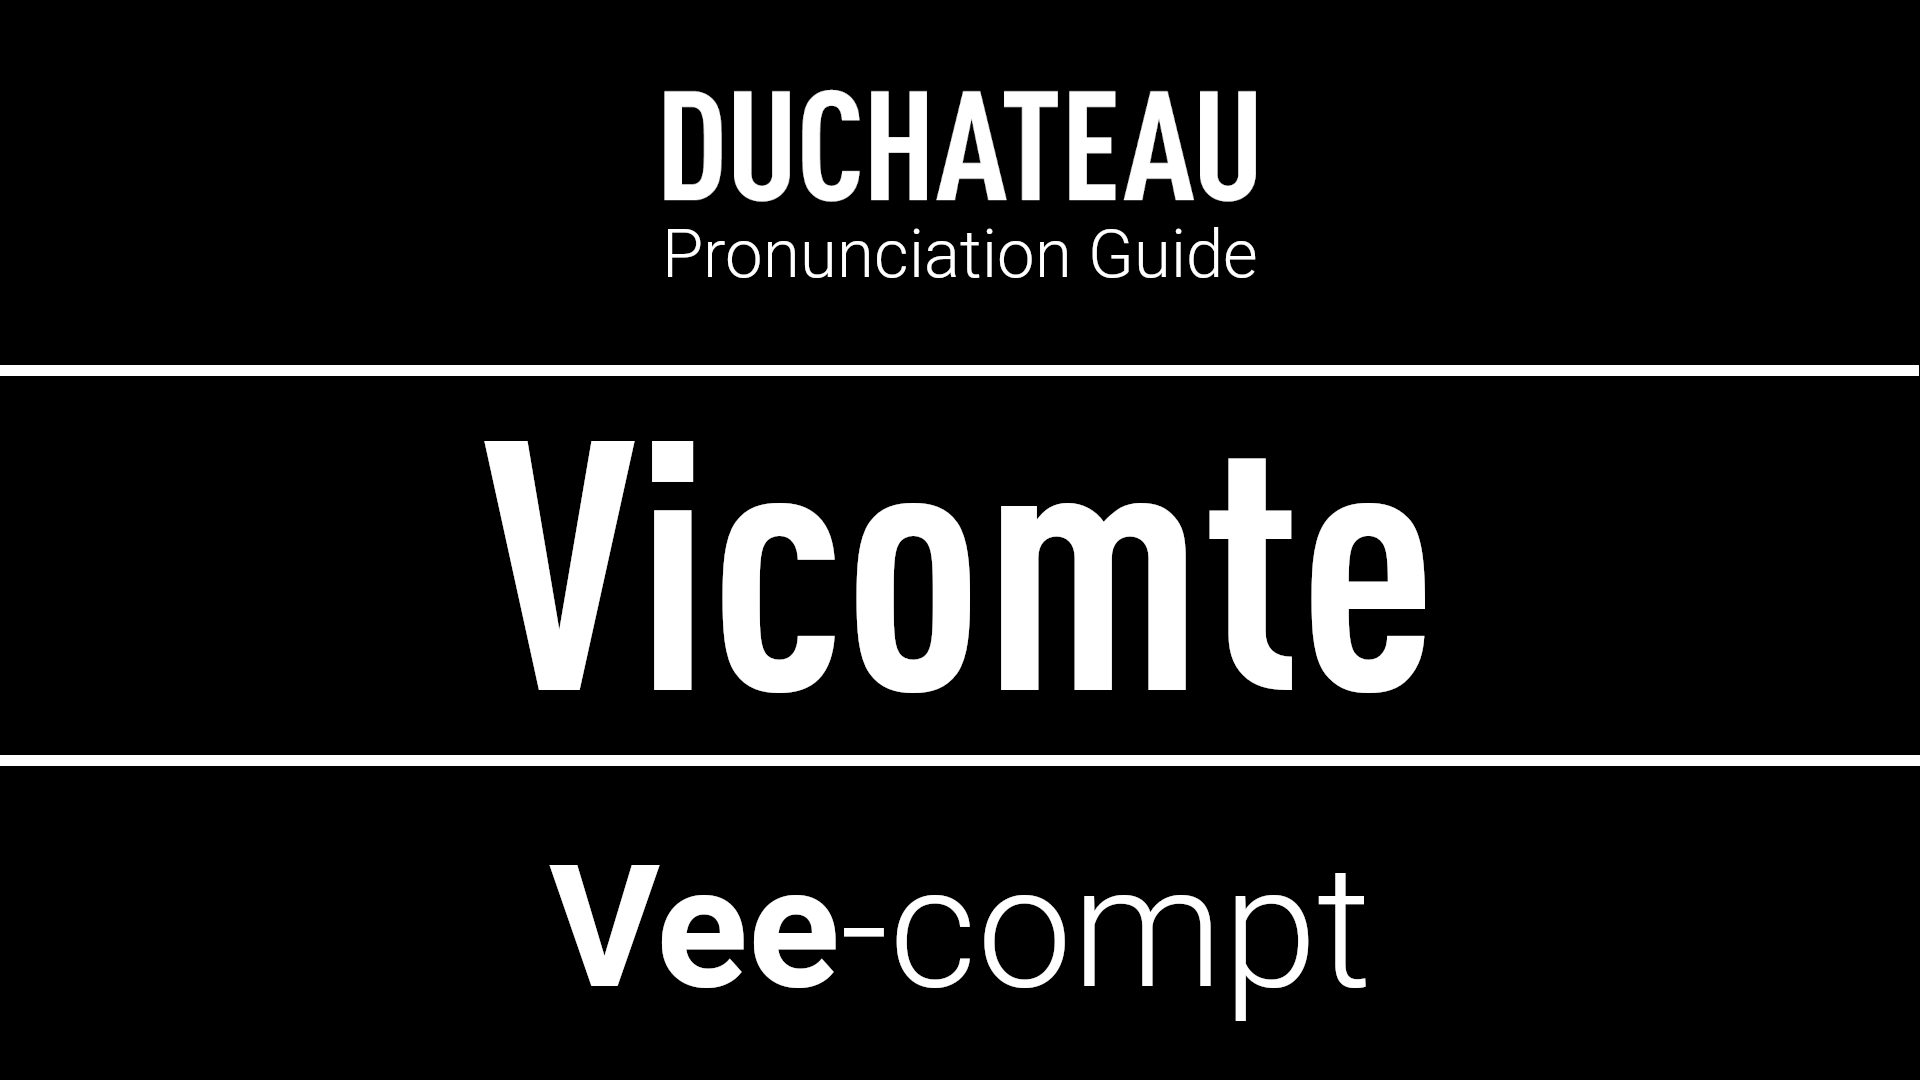 Vicomte Pronunciation